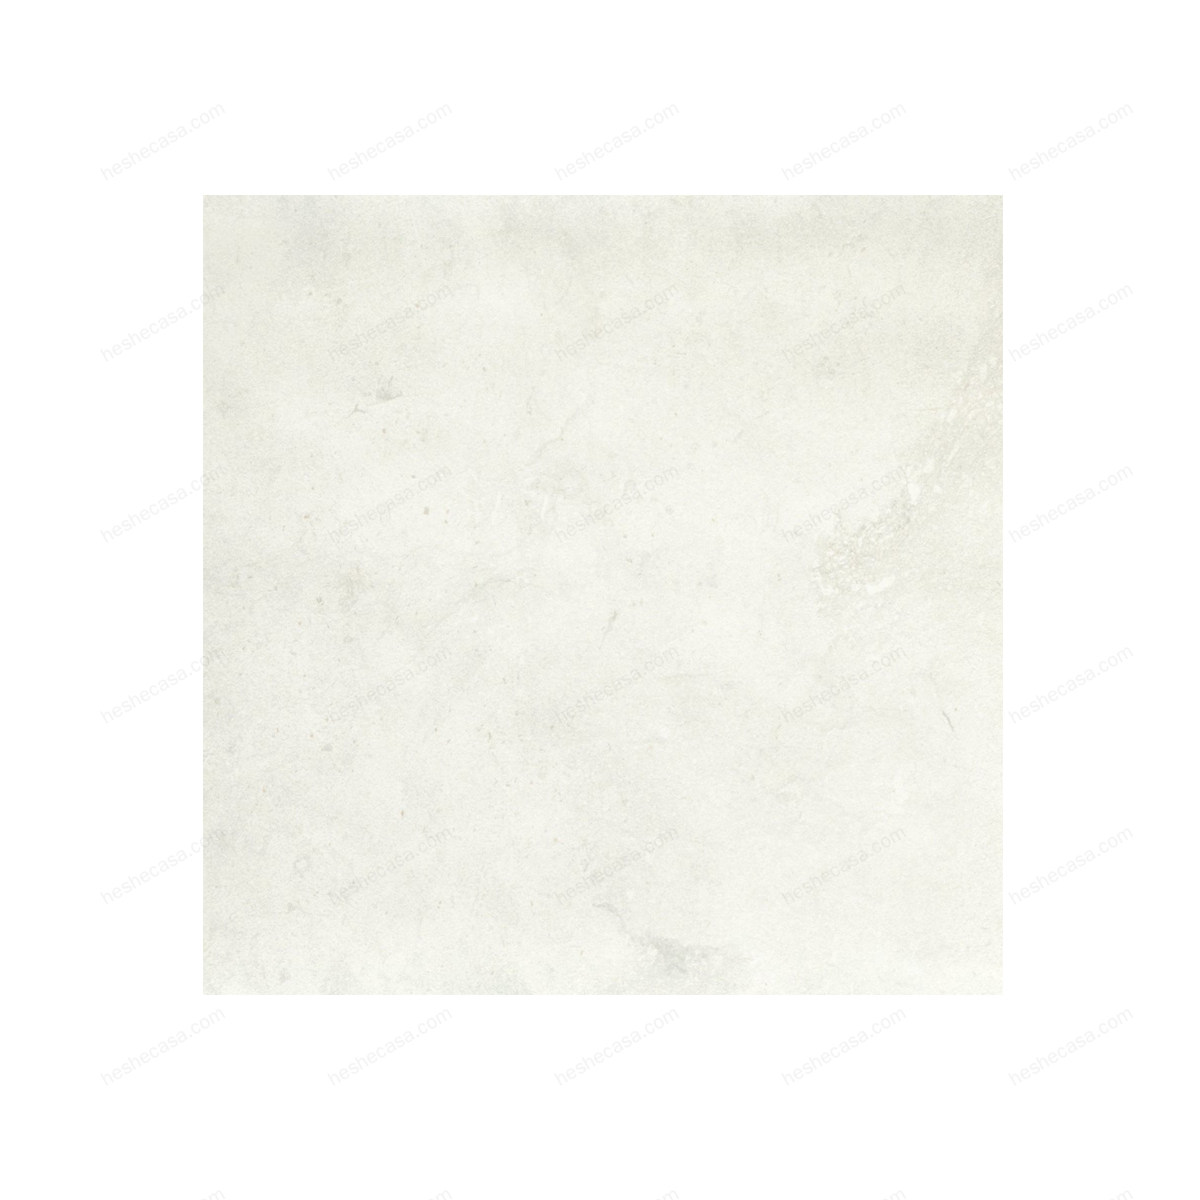 Bianco Perla瓷砖